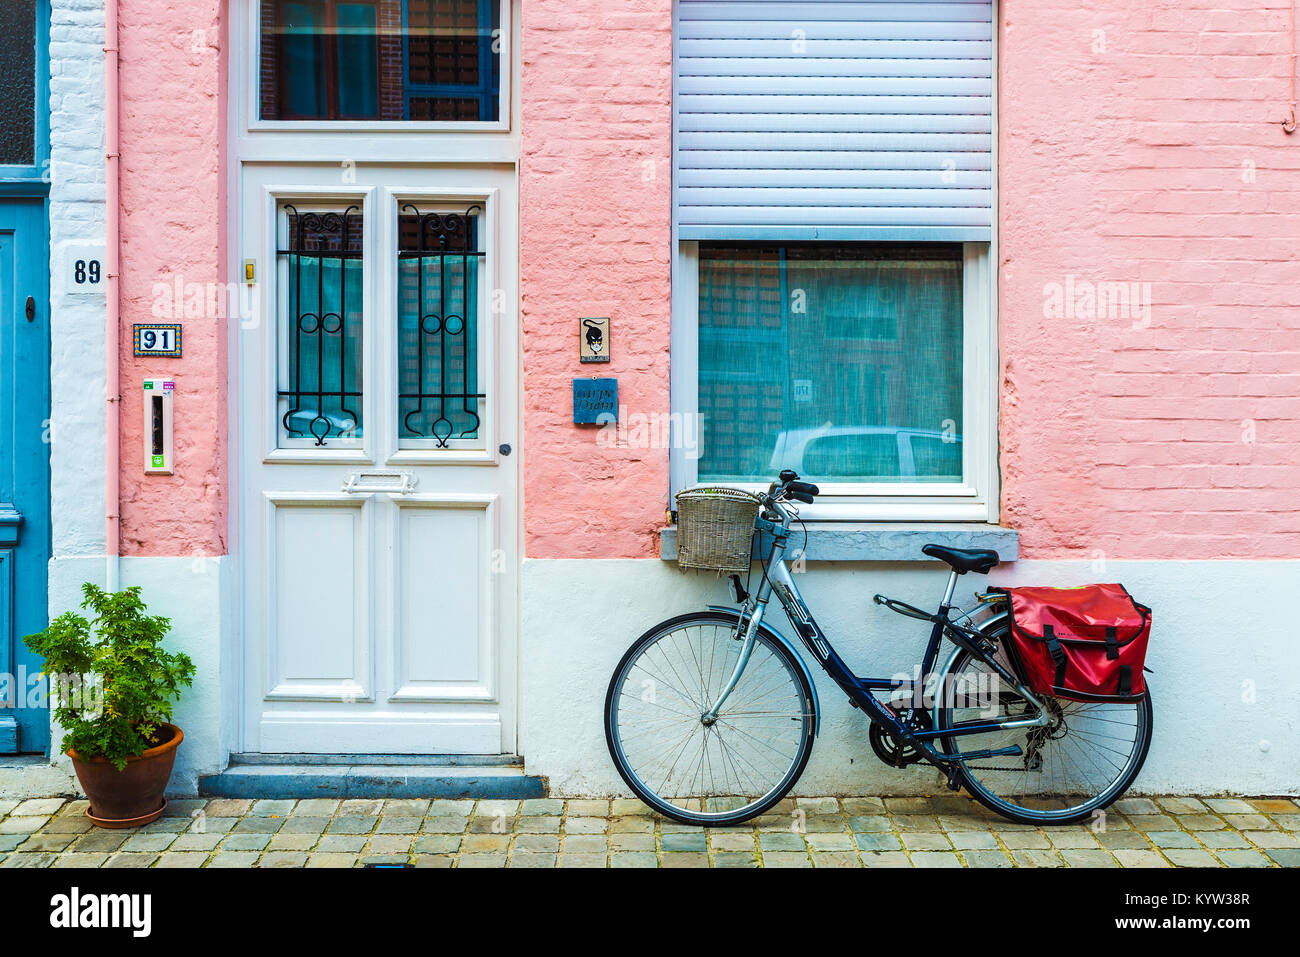 Bruges, Belgio - 31 agosto 2017: bicicletta parcheggiata di fronte a casa con parete rosa su una strada della città medievale di Bruges, Belgio Foto Stock